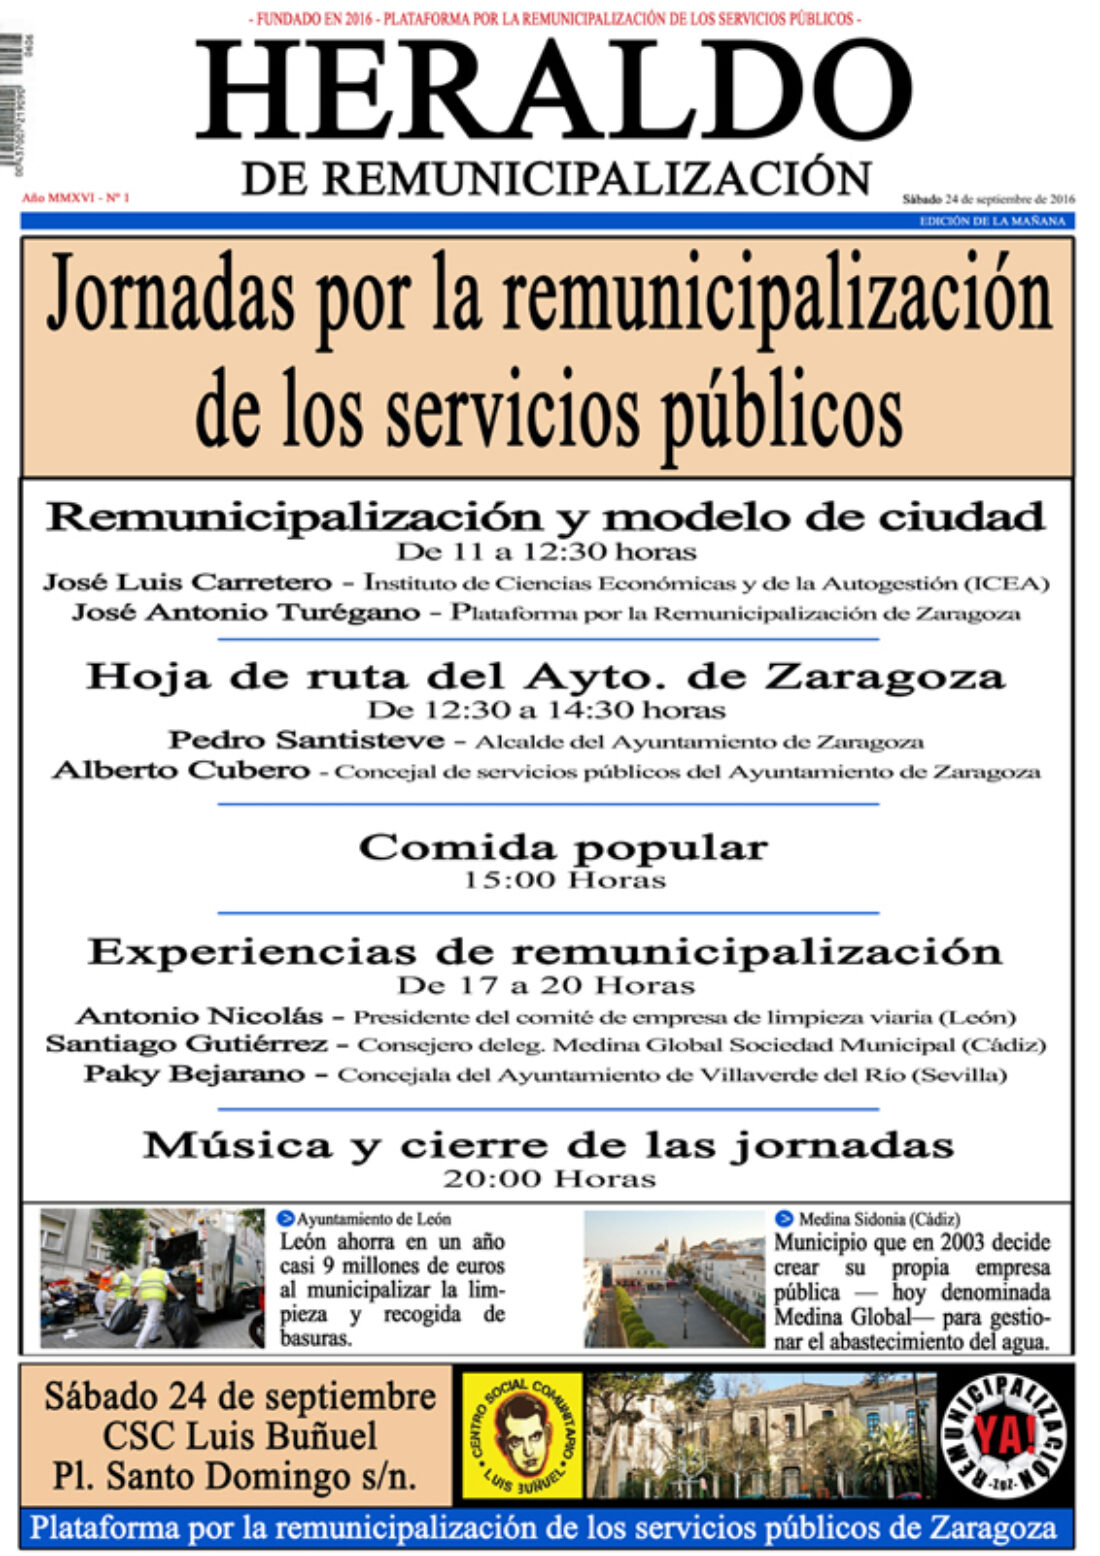 La Plataforma por la remunicipalización de Zaragoza organiza unas jornadas el 24 de septiembre